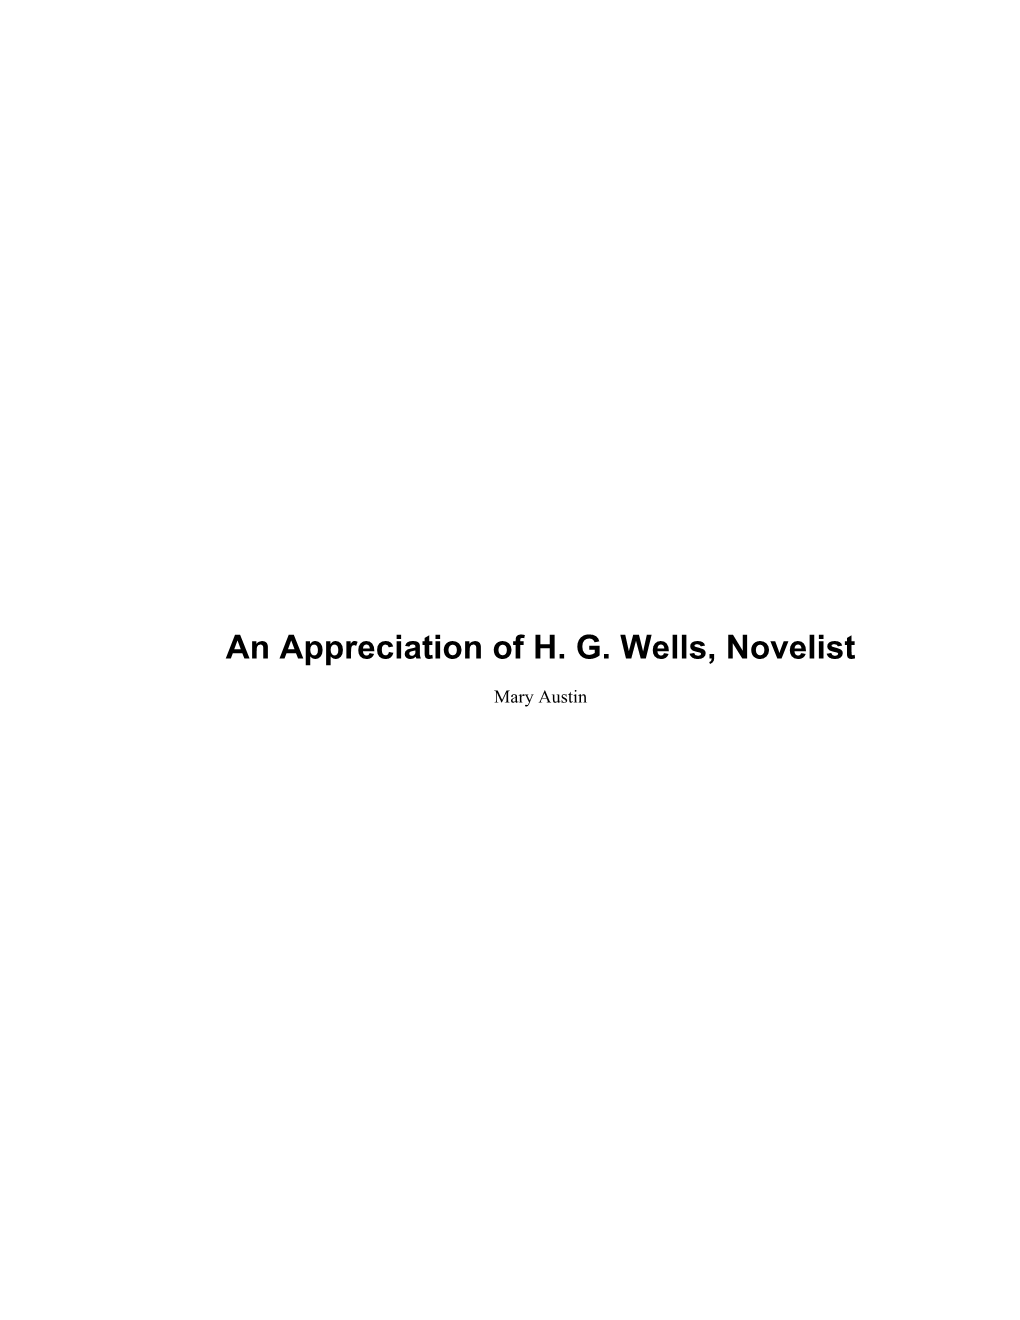 An Appreciation of H. G. Wells, Novelist